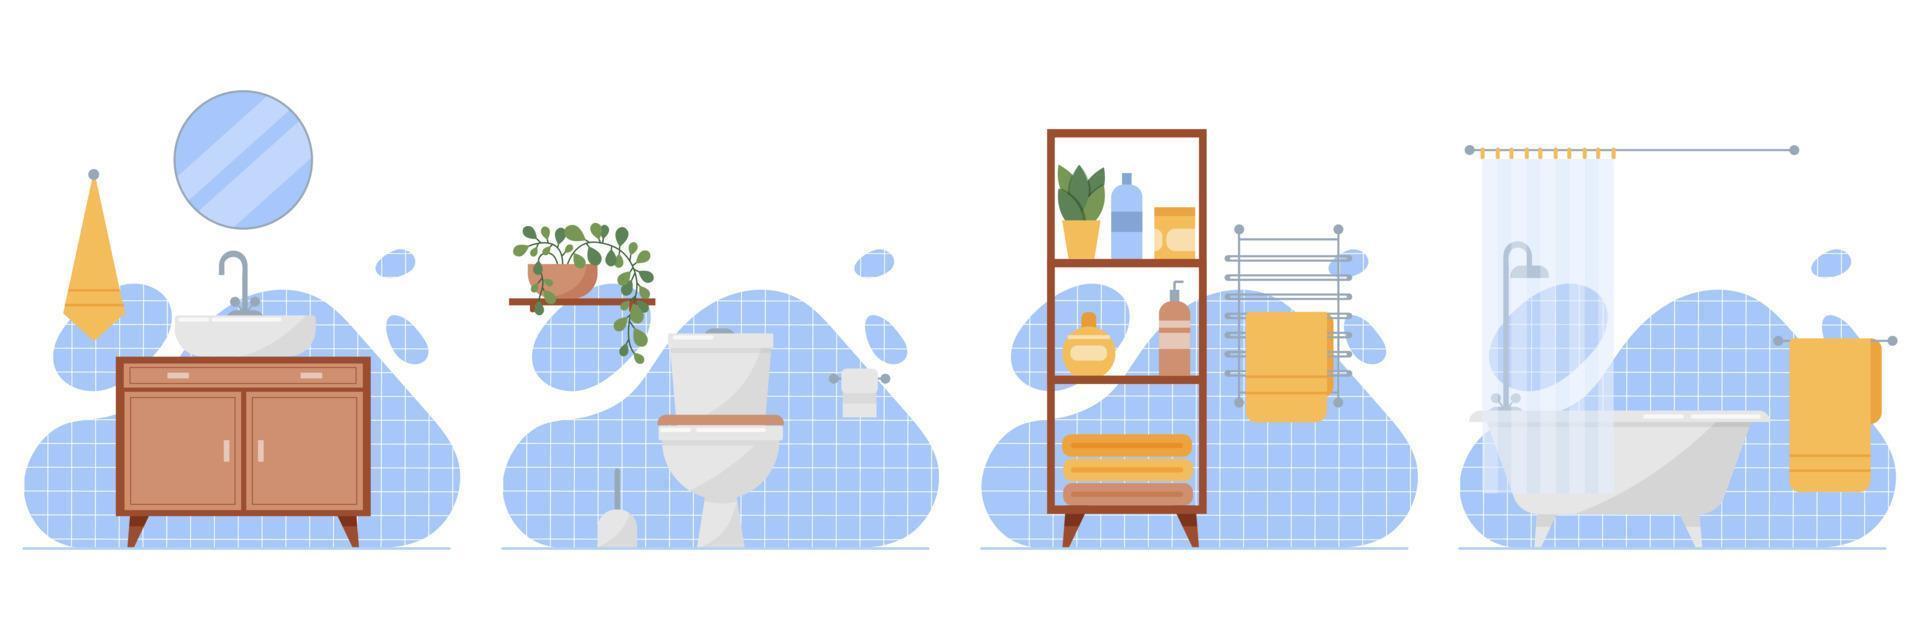 Diseño de interiores de baño e inodoro con muebles y artículos de baño: mueble con lavabo, espejo, toallero, inodoro, estante de baño con botellas, bañera con mampara, azulejos azules. vector